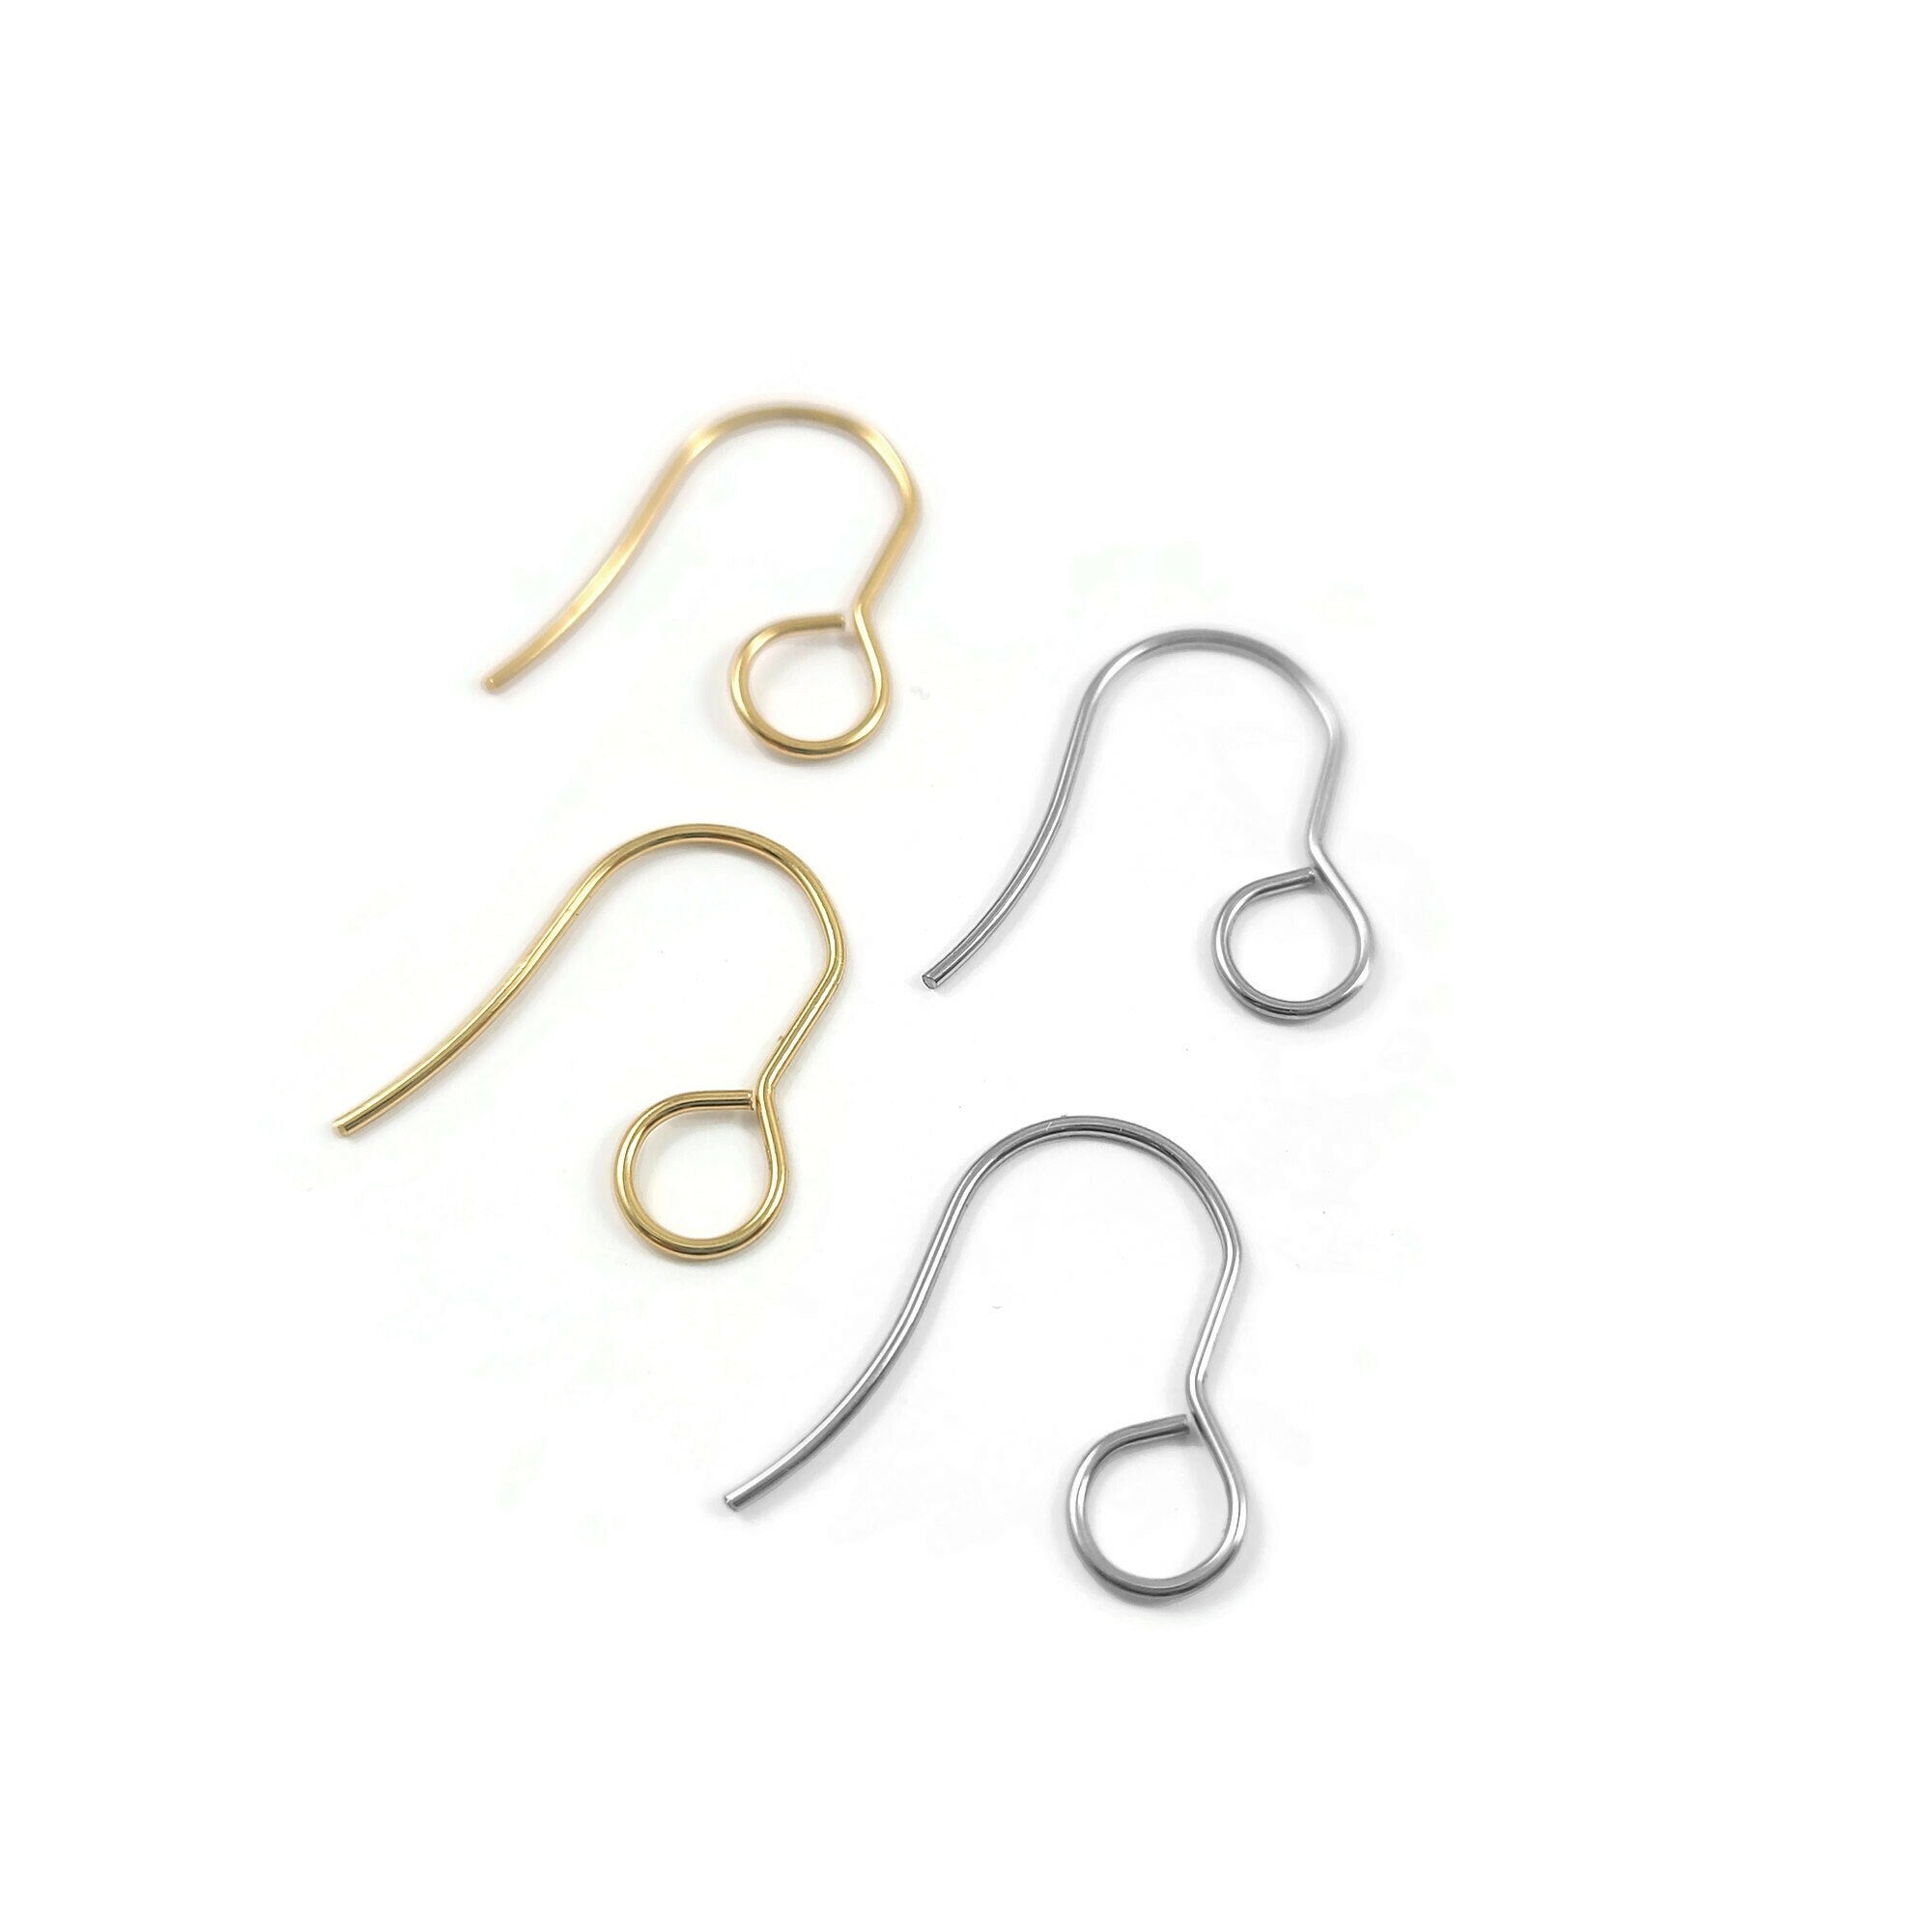 Surgical Steel Earring Hooks w/ Backing